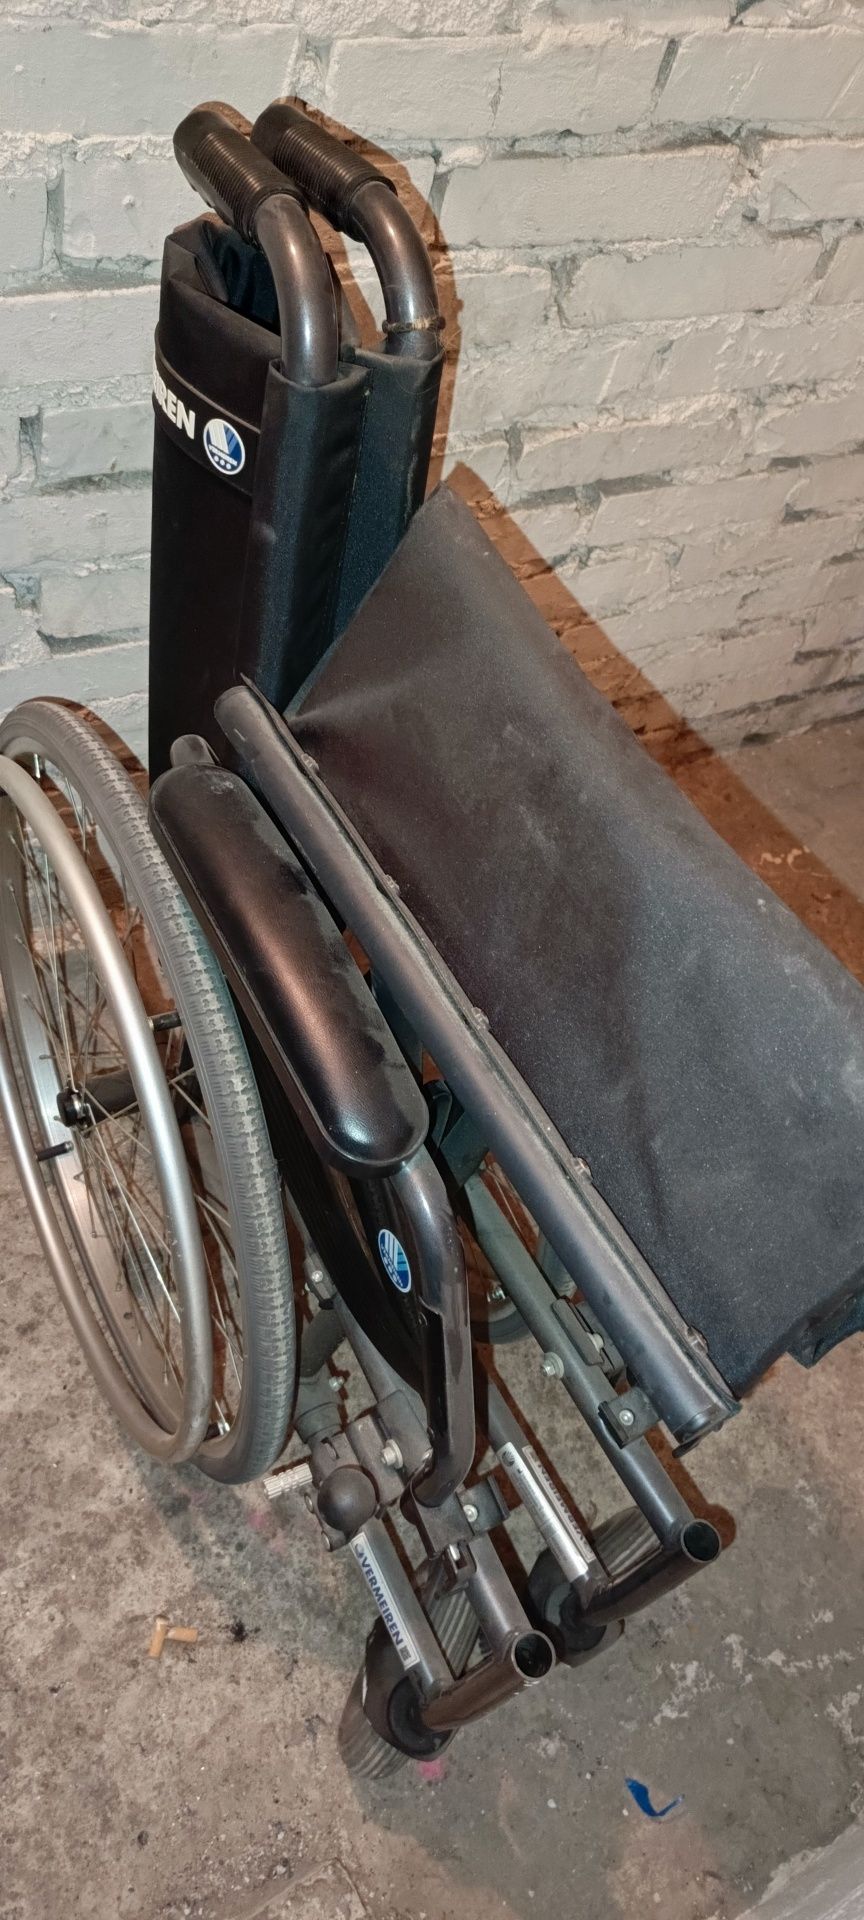 Wózek inwalidzki vermeiren jazz s50